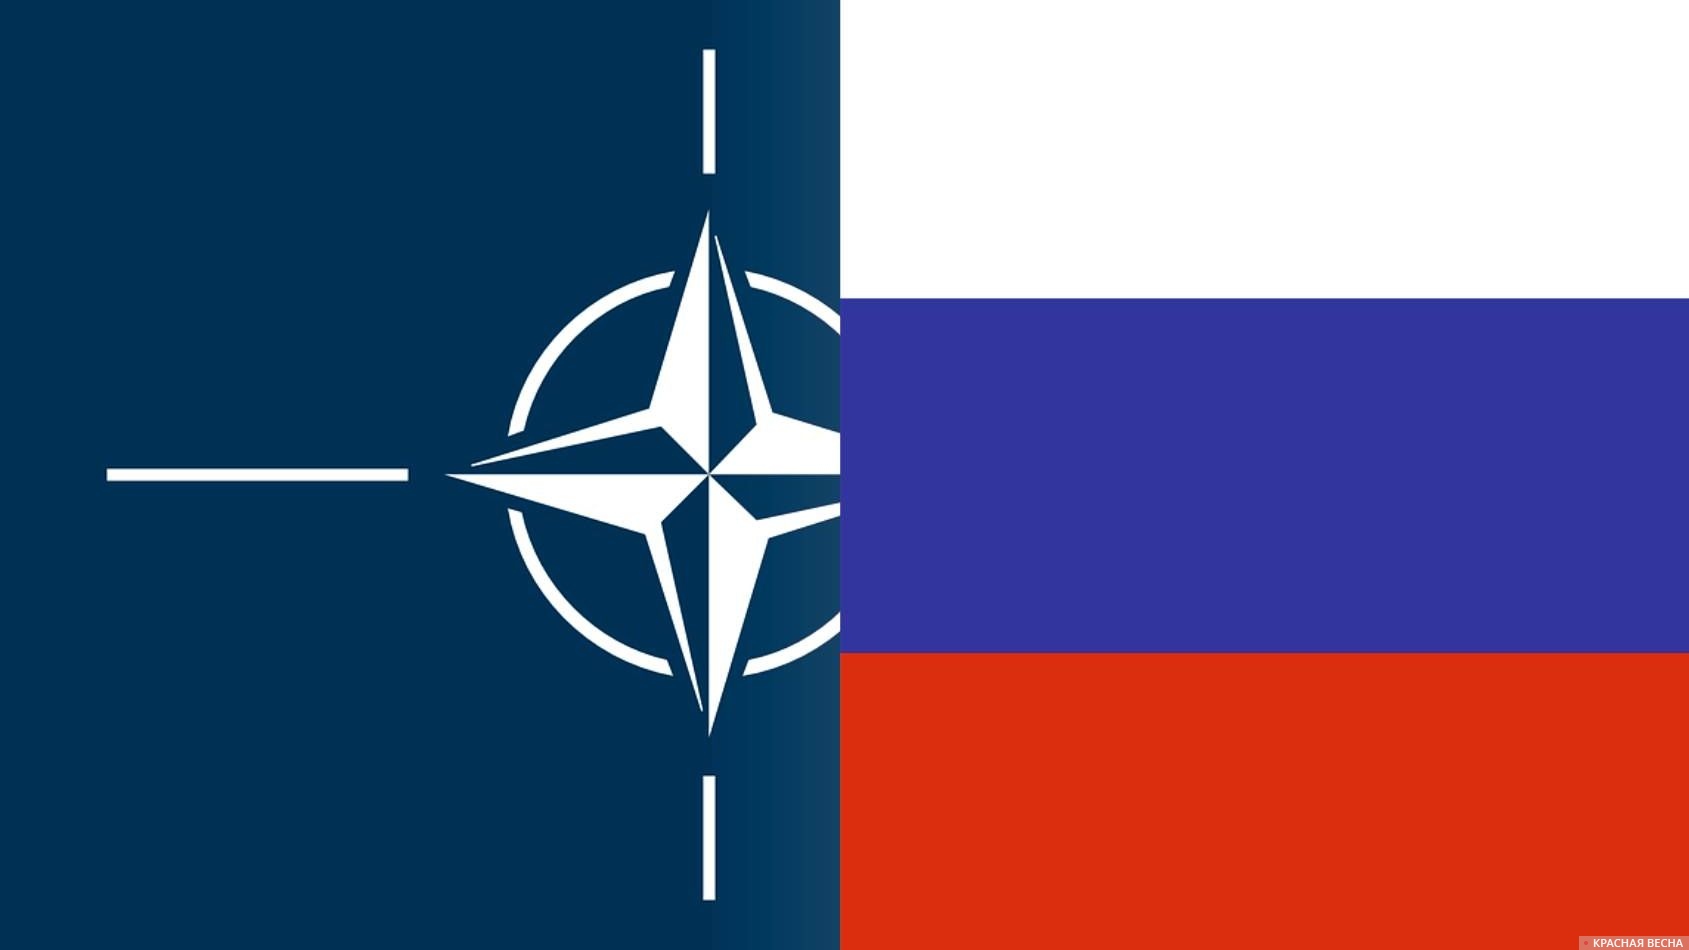 Флаги НАТО и России